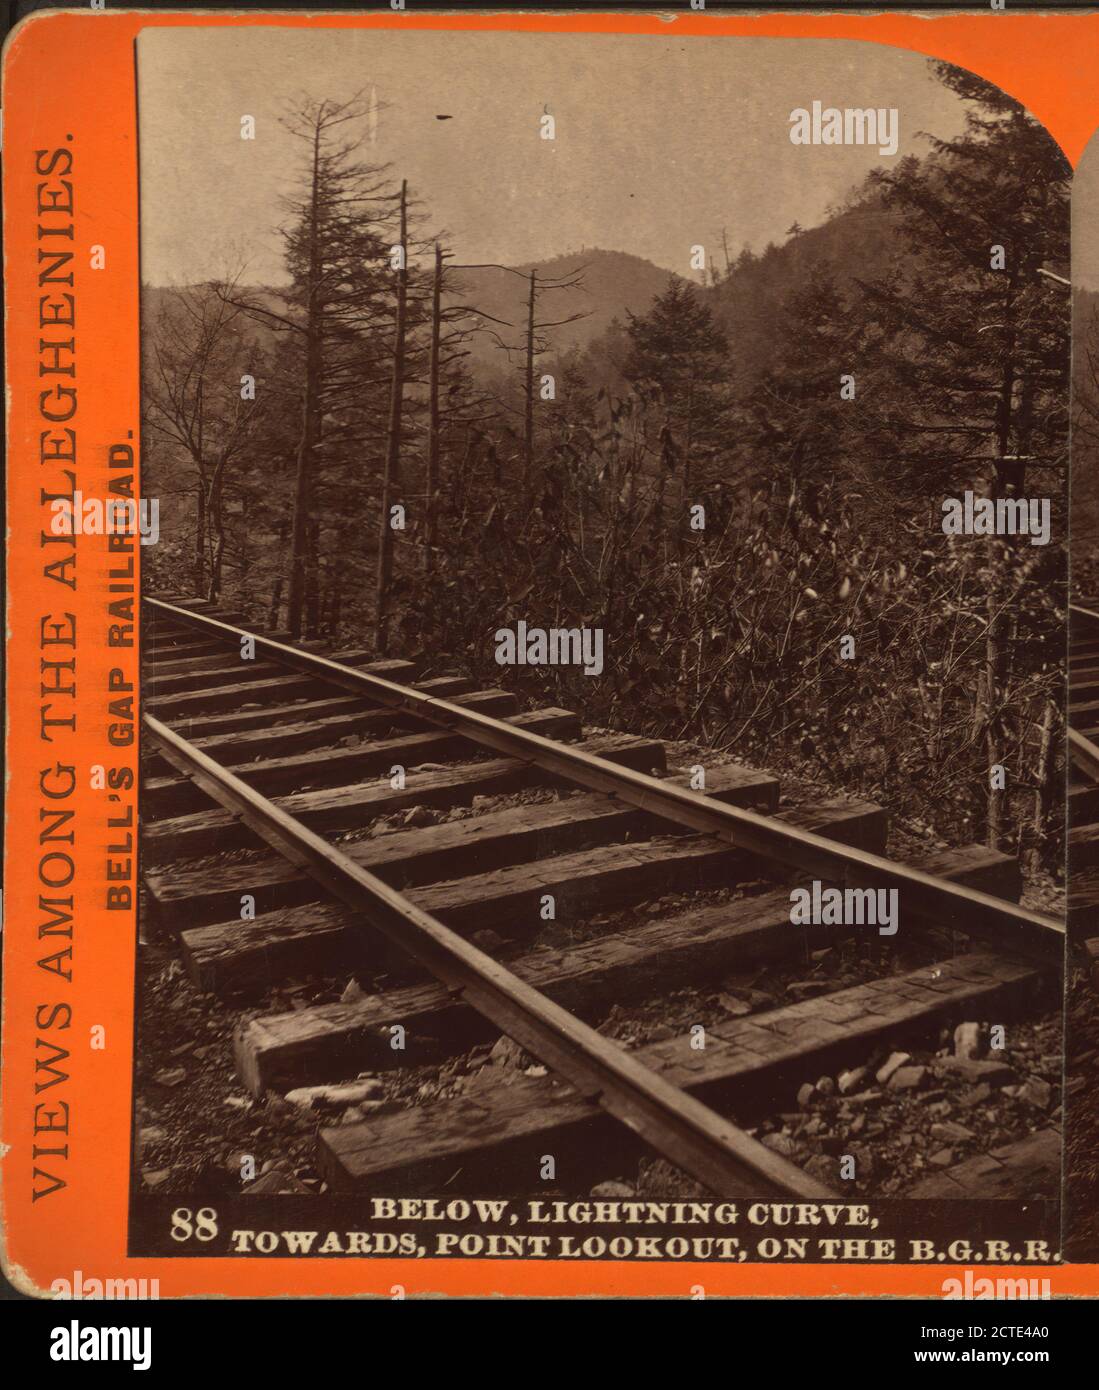 Ci-dessous, Lightning Curve, vers point Lookout, sur le B. G. R. R., Bonine, R. A., Pennsylvania Railroad, Pennsylvania, Allegheny Mountains Banque D'Images